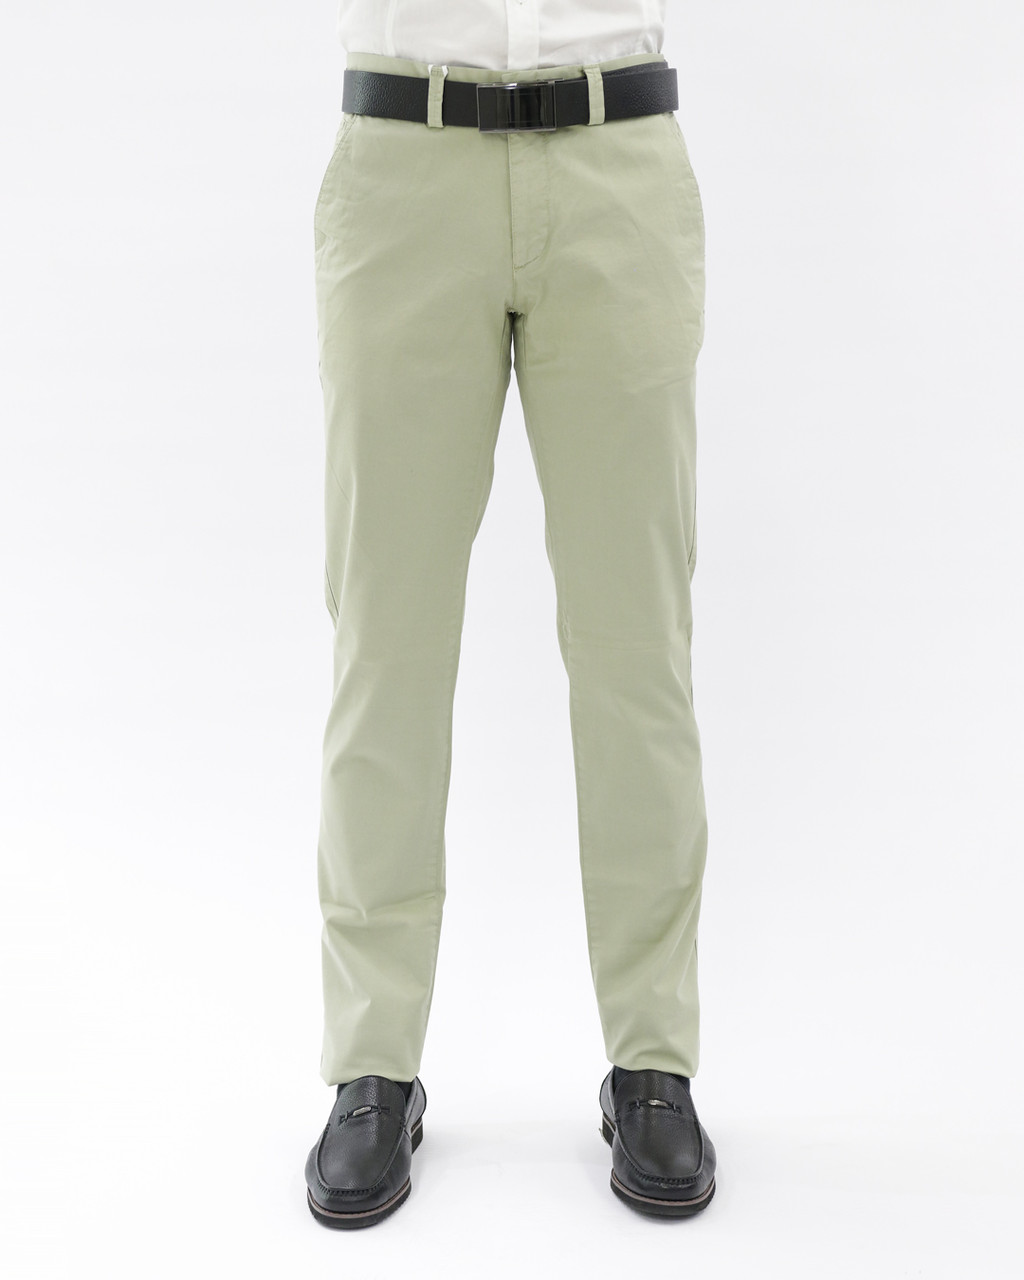 Мужские повседневные брюки «UM&H 411114692» оливковый, фото 1